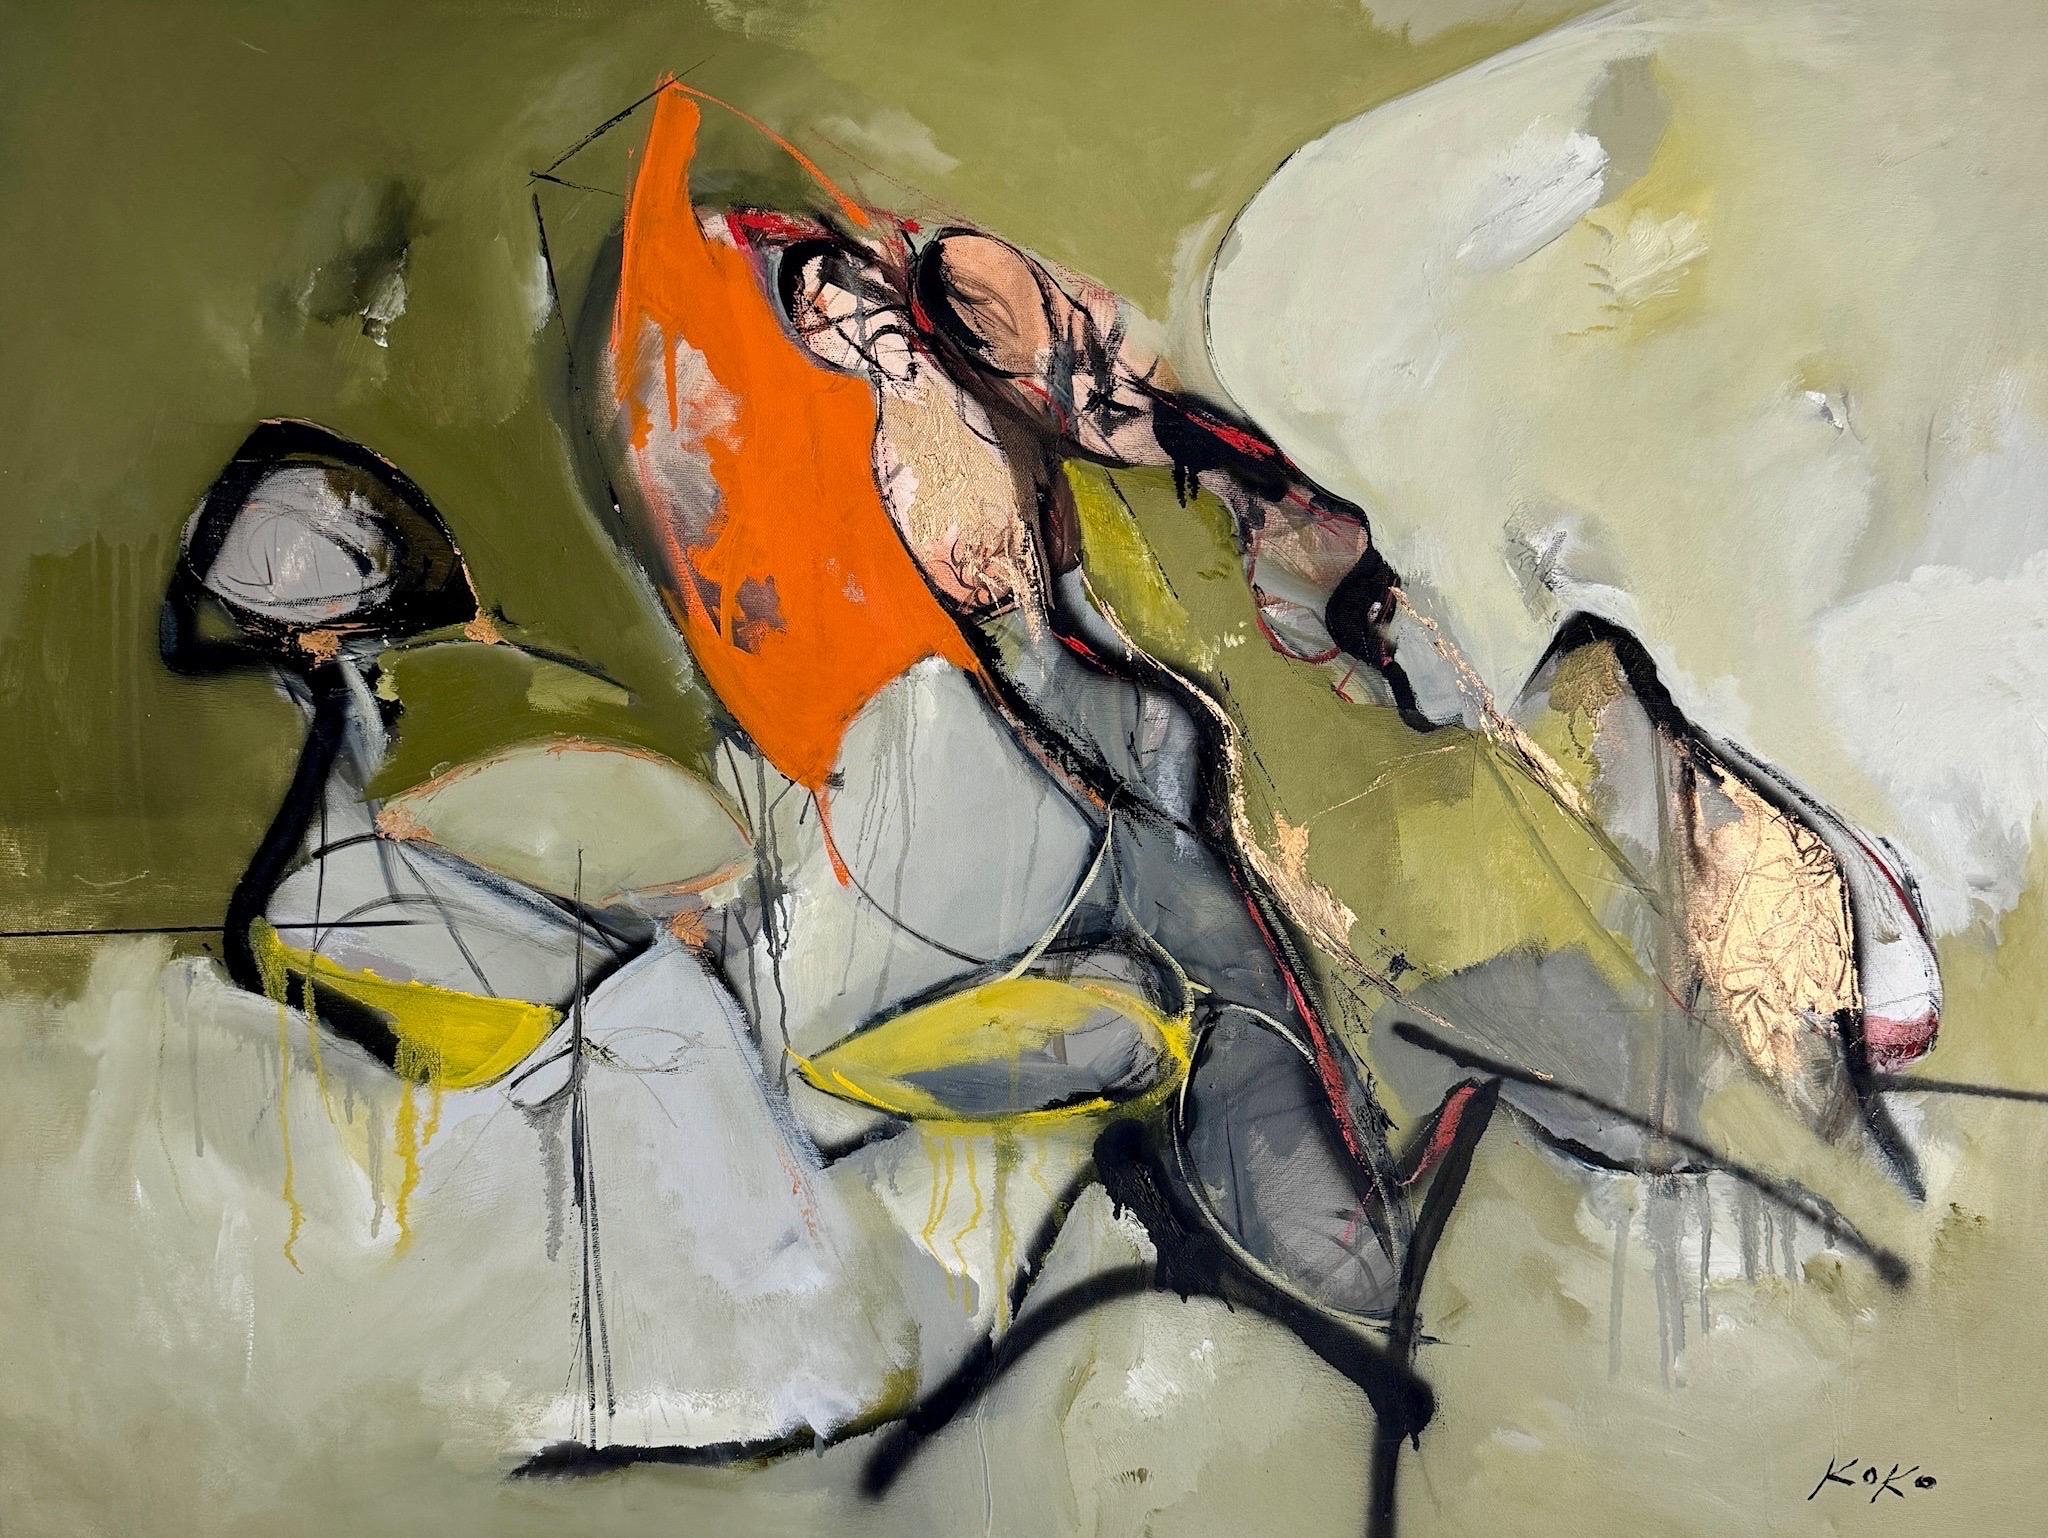 Abstract Painting KOKO HOVAGUIMIAN - L'art contemporain en mouvement , En mouvement.